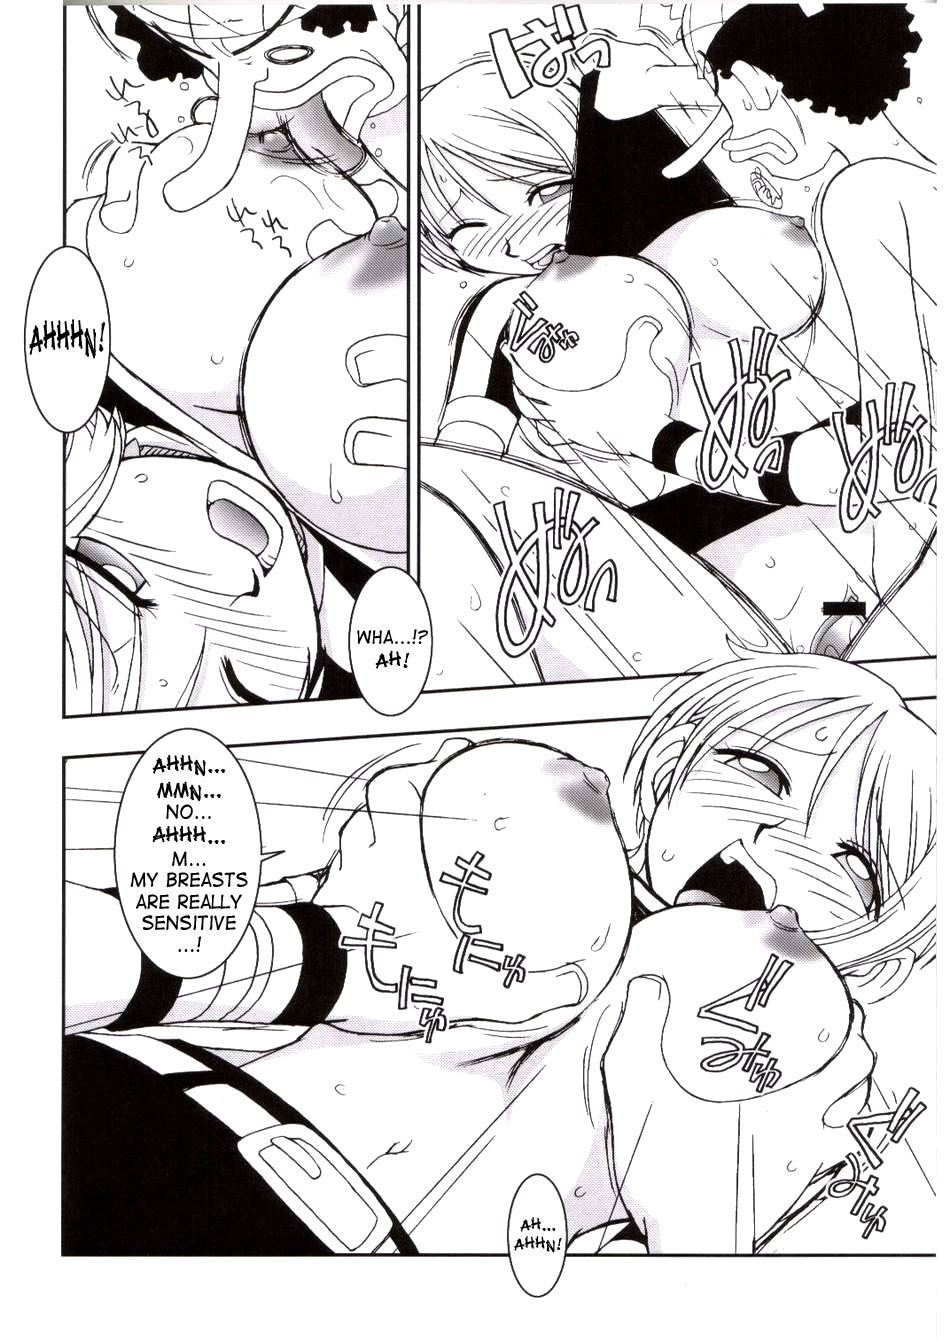 ORANGE PIE Vol.3 one piece 18 hentai manga